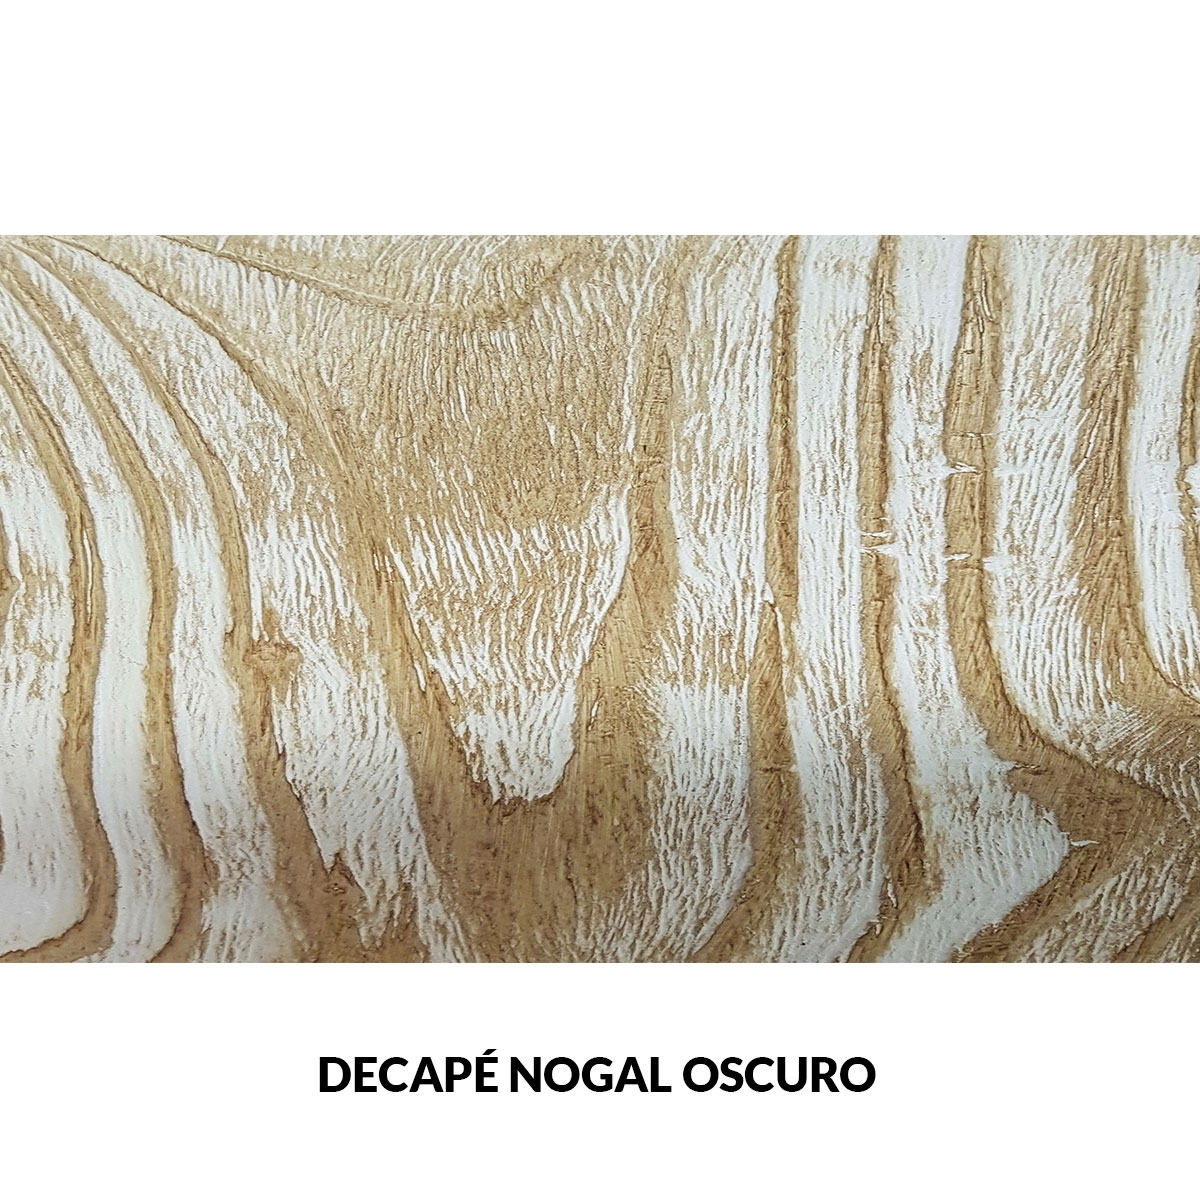 Panel rústico de tres lamas imitación madera de 300x62cm decape nogal oscuro